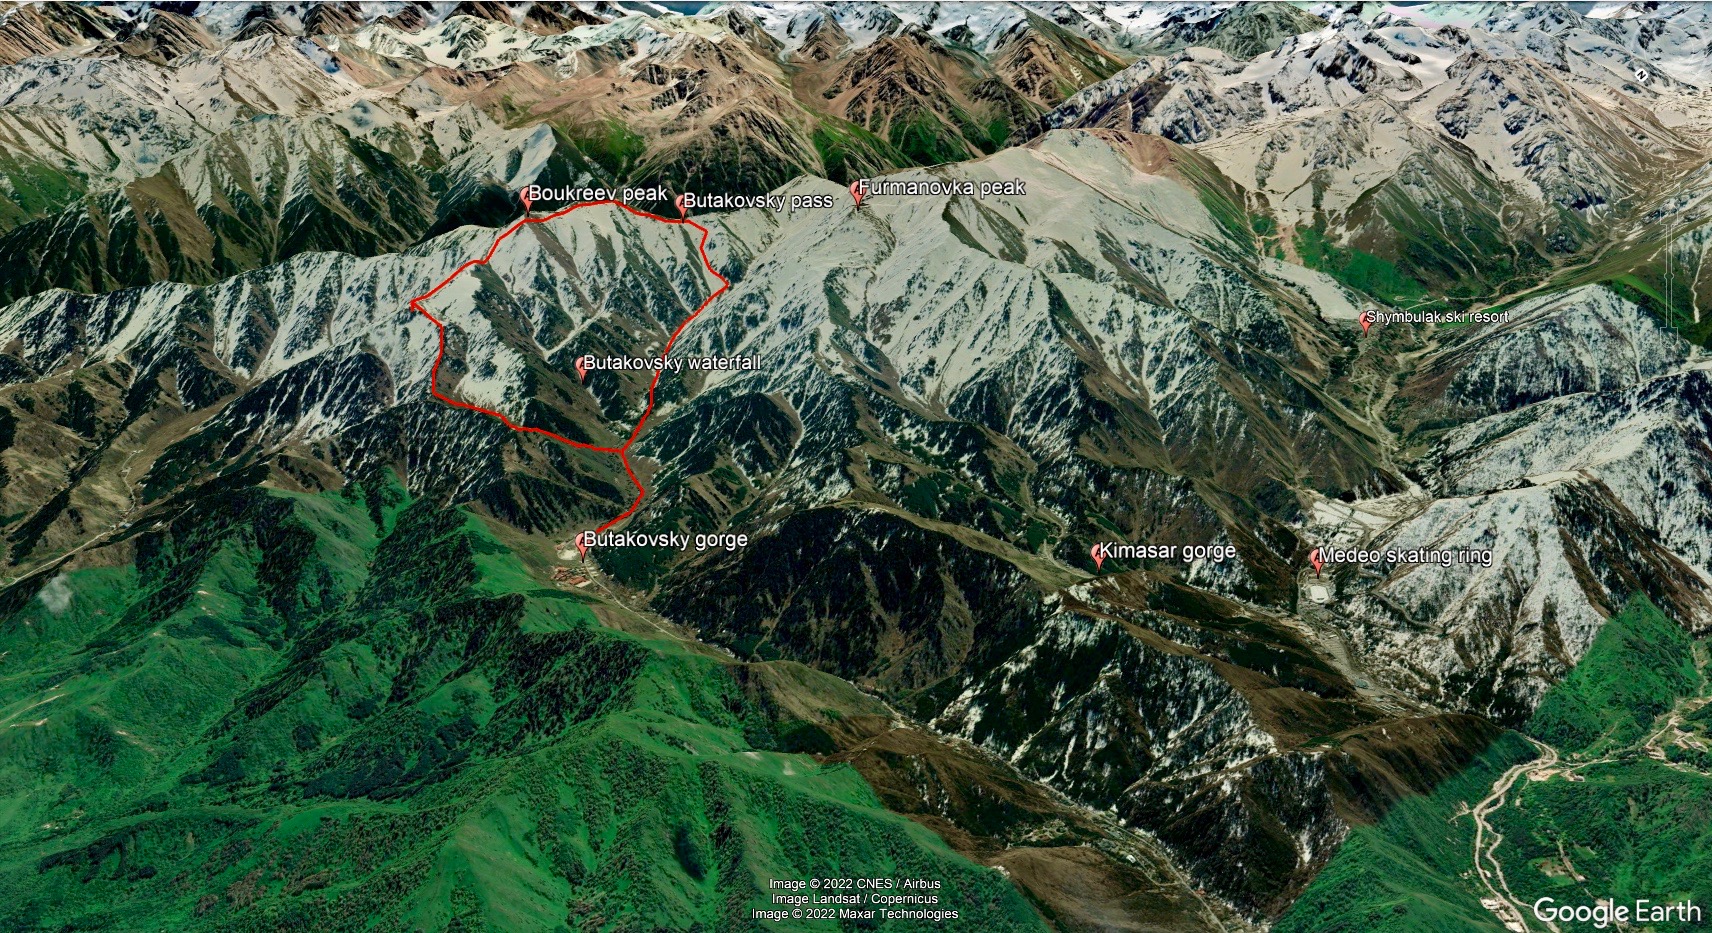 Bukreyev peak trekking map